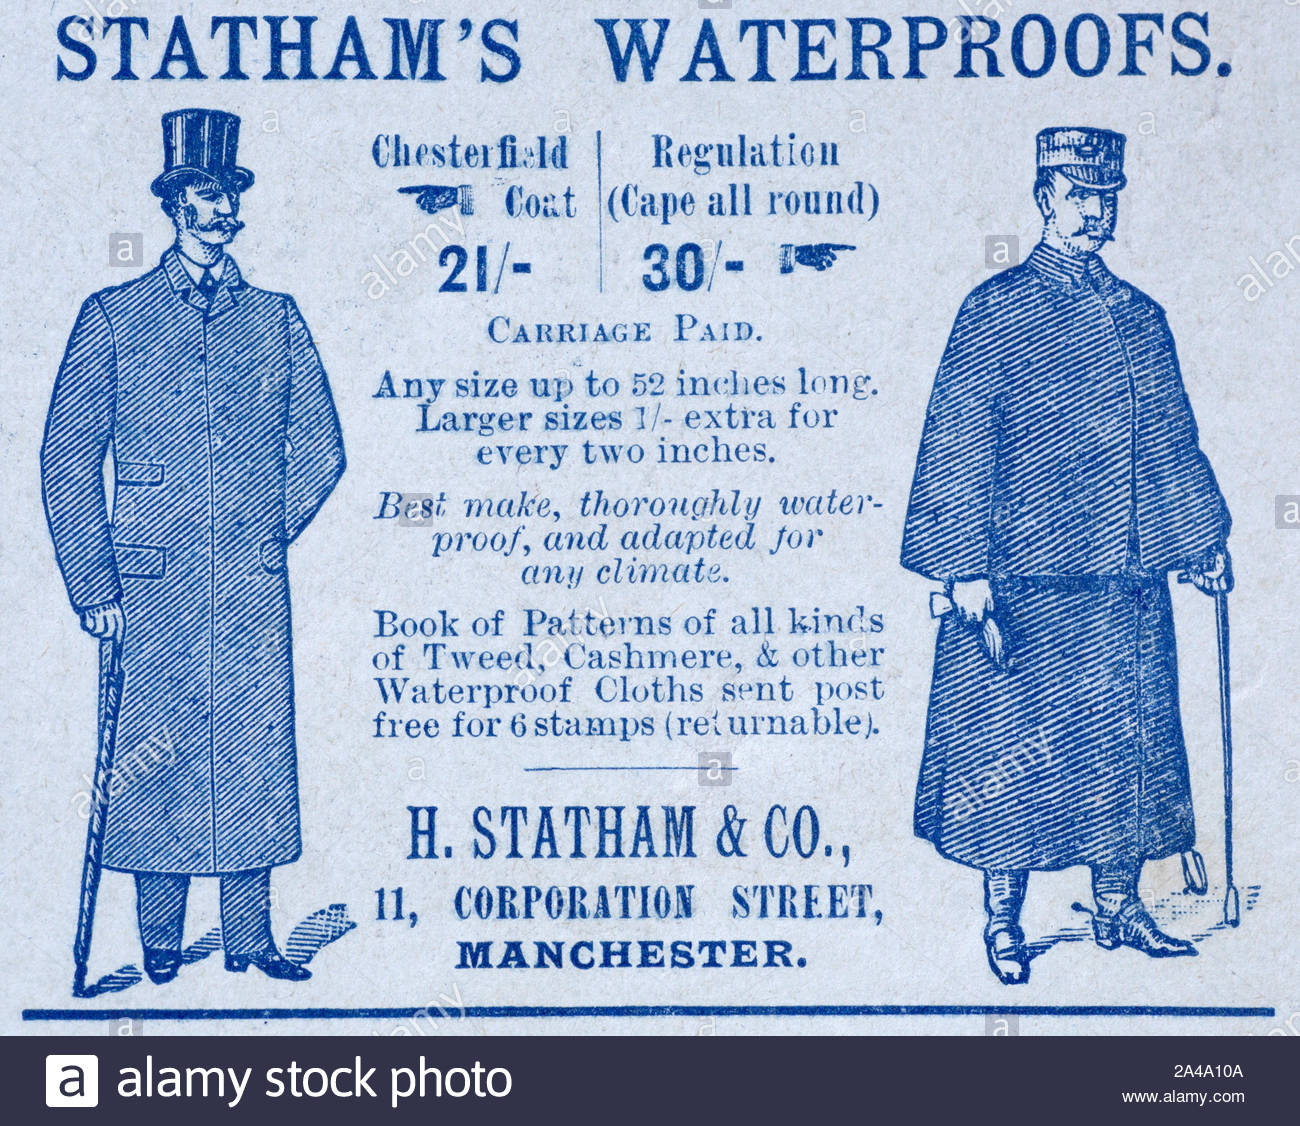 L'époque victorienne, Statham's imperméabilise, vintage advertising de 1895 Banque D'Images